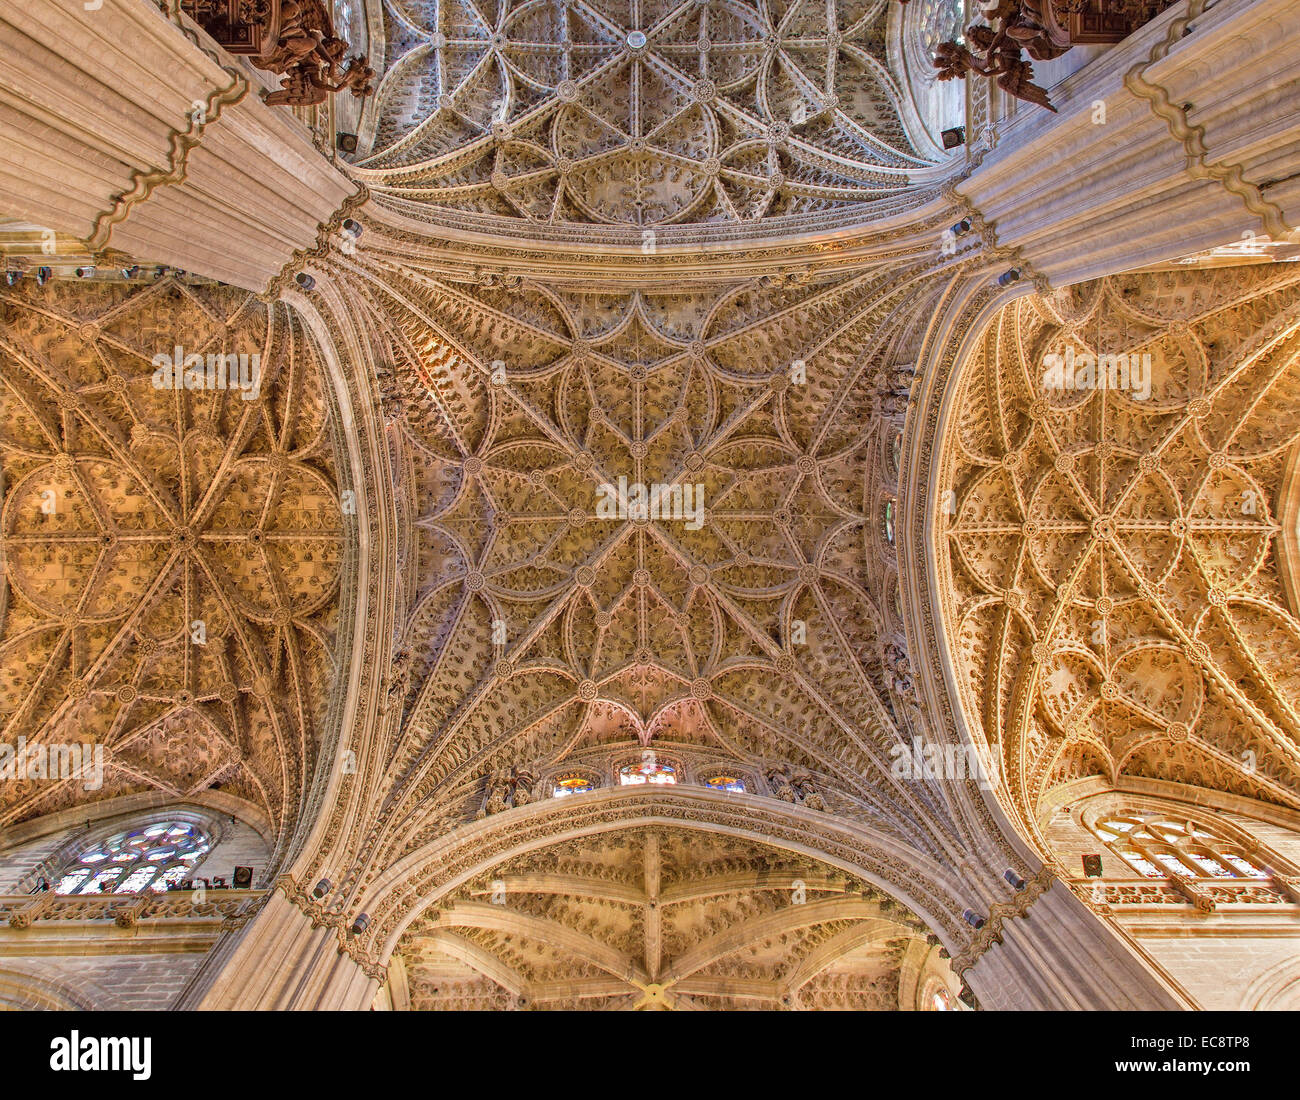 Sevilla, España - 29 de octubre de 2014: El arco central gótica de la Catedral de Santa María de la Sede. Foto de stock